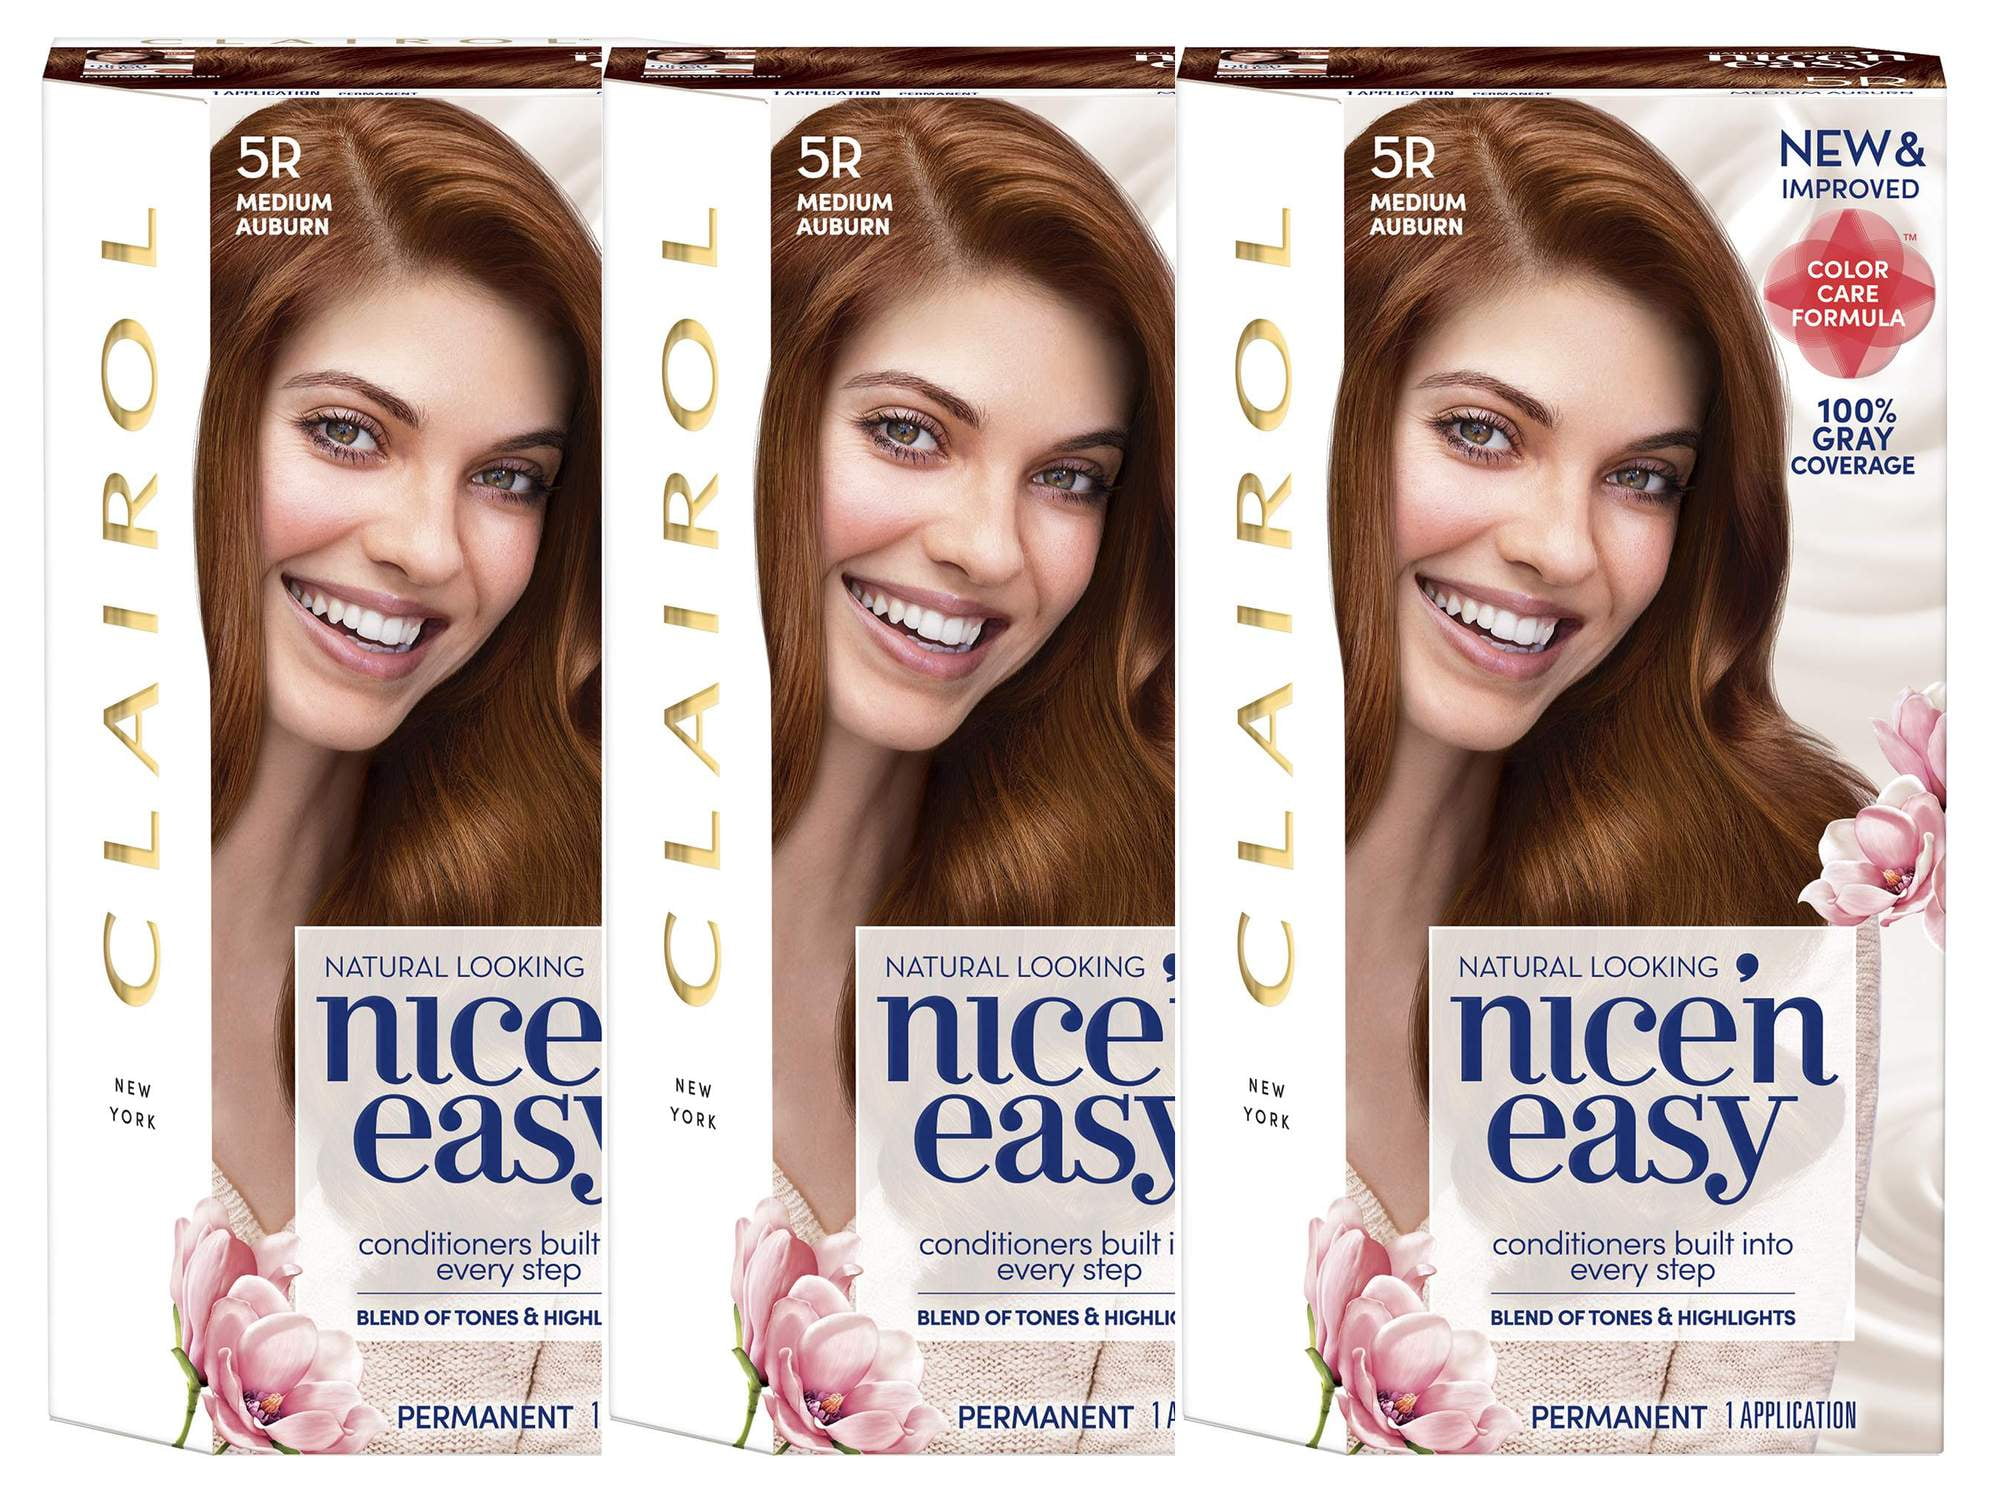 Clairol Nice'n Easy Permanent Hair Color, 6N Lightest Brown, Pack of 1 - wide 1